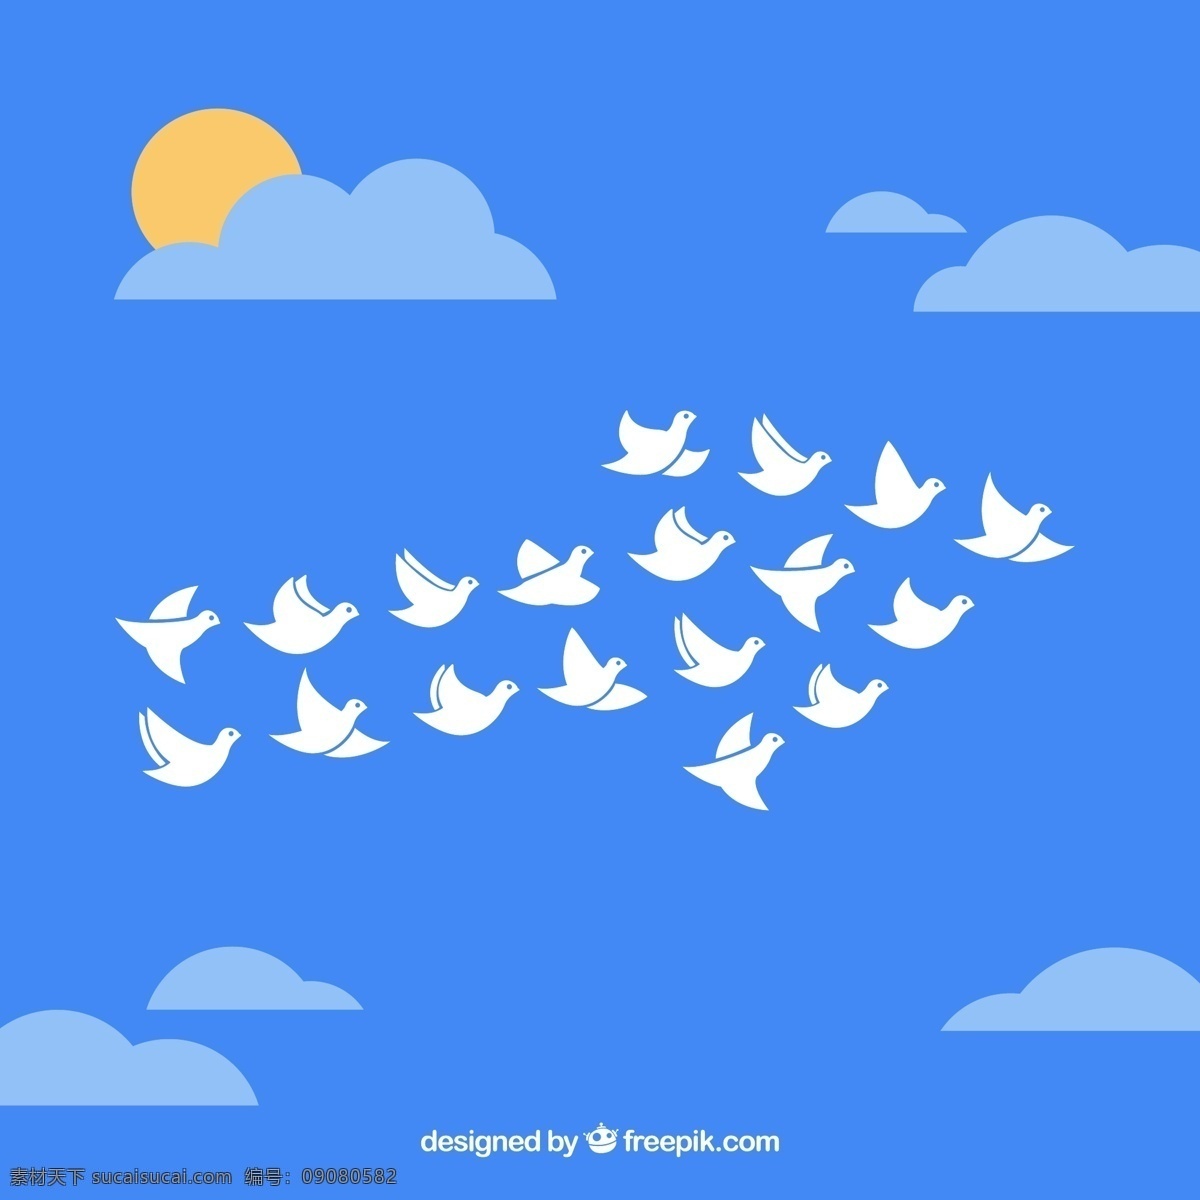 蓝天 下 白鸽 群 鸽子 太阳 天空 云朵 箭头 矢量 高清图片